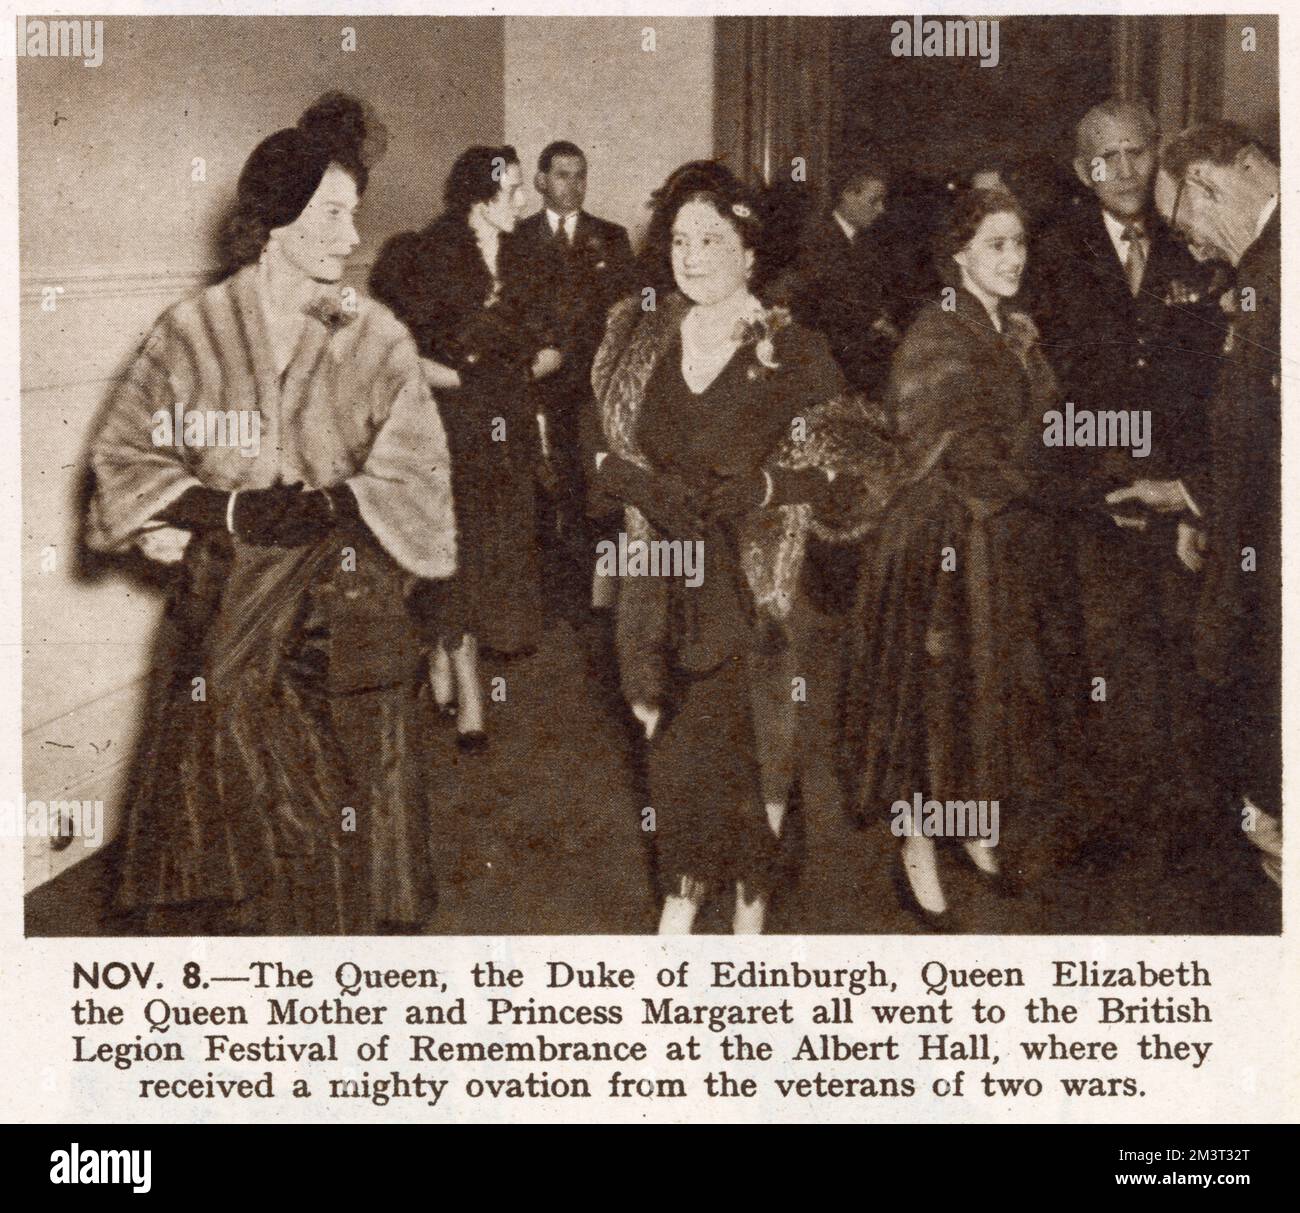 La reine Elizabeth II, la reine mère et la princesse Margaret assistent au Festival du souvenir à la Royal Albert Hall le soir de l'armistice (11th novembre) - un événement organisé par la Légion britannique. Banque D'Images